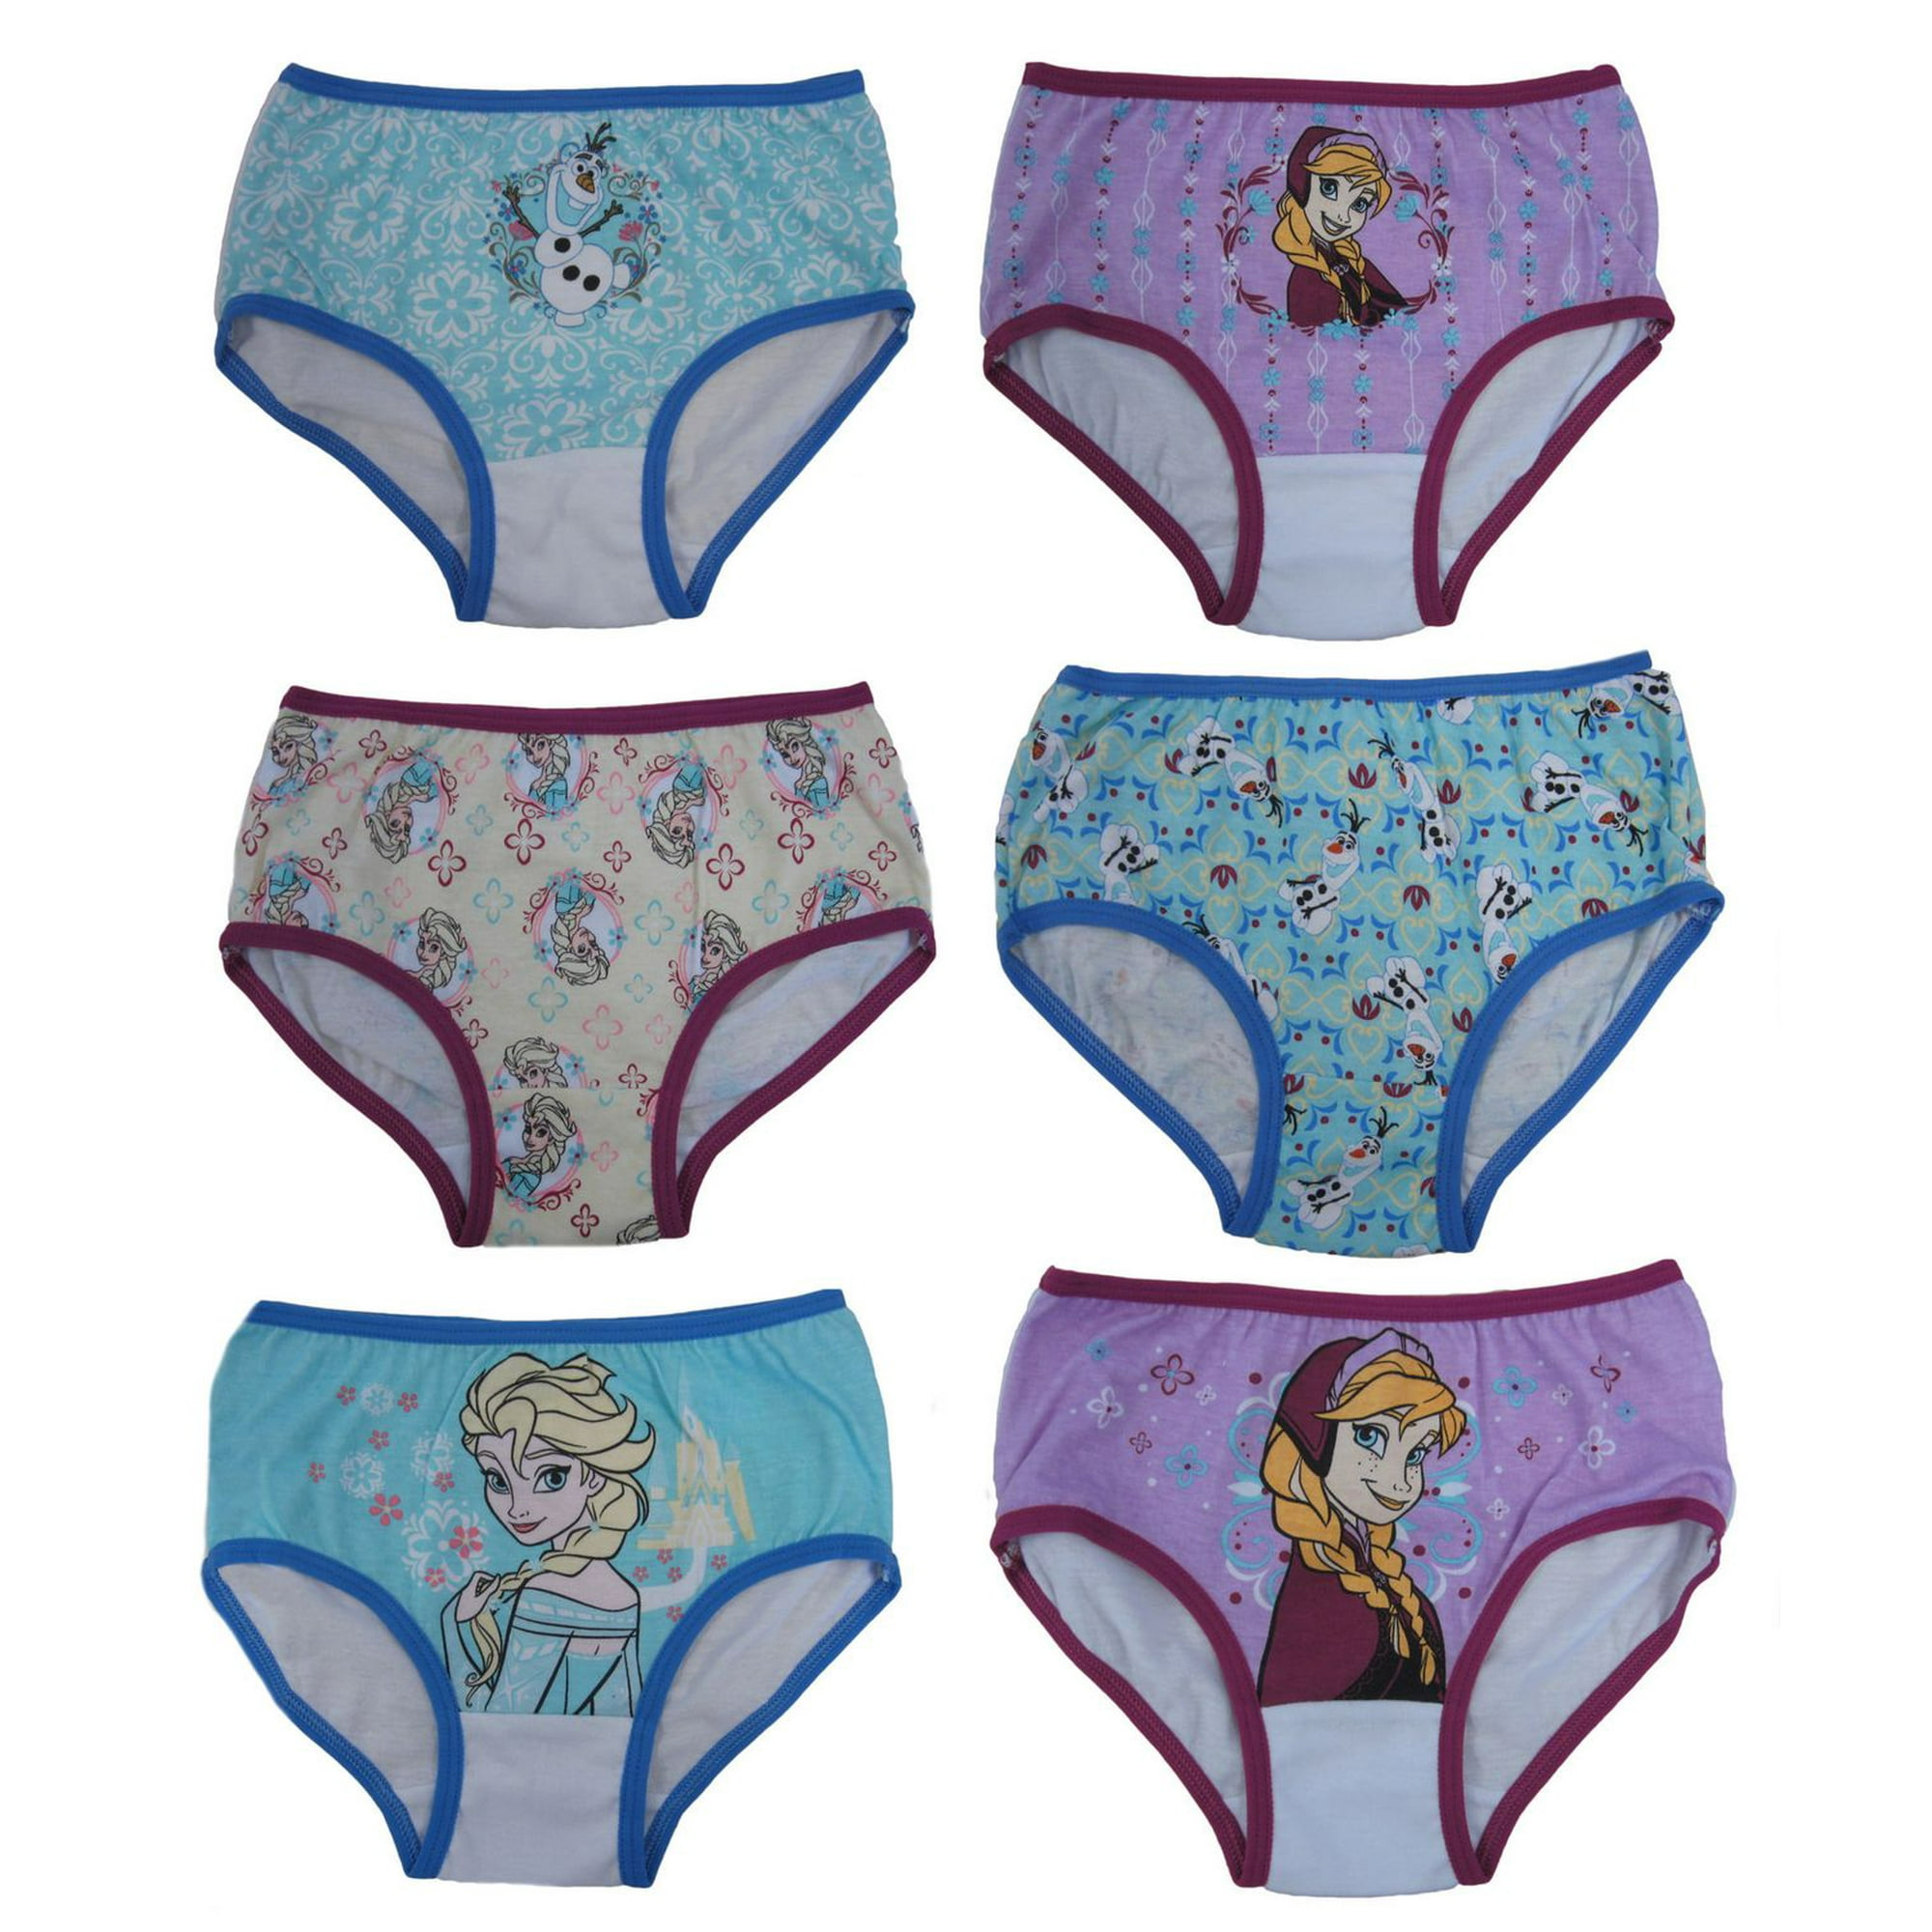 ₪57-Disney Frozen Elsa Kids Girls Underwear Cartoon Pattern Modal